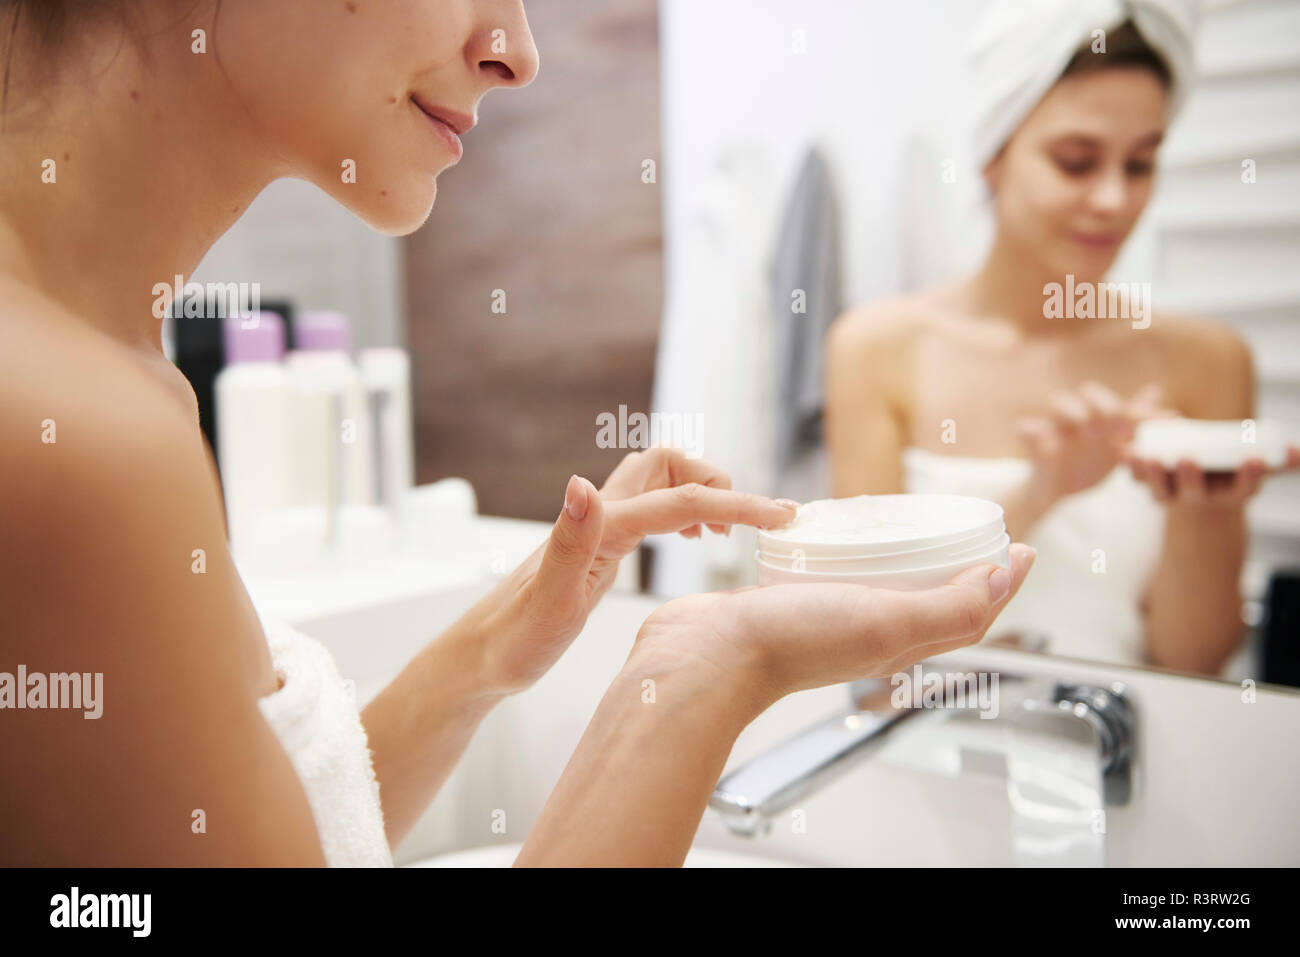 Mujer joven de aplicar la crema hidratante en el baño, vista parcial Foto de stock